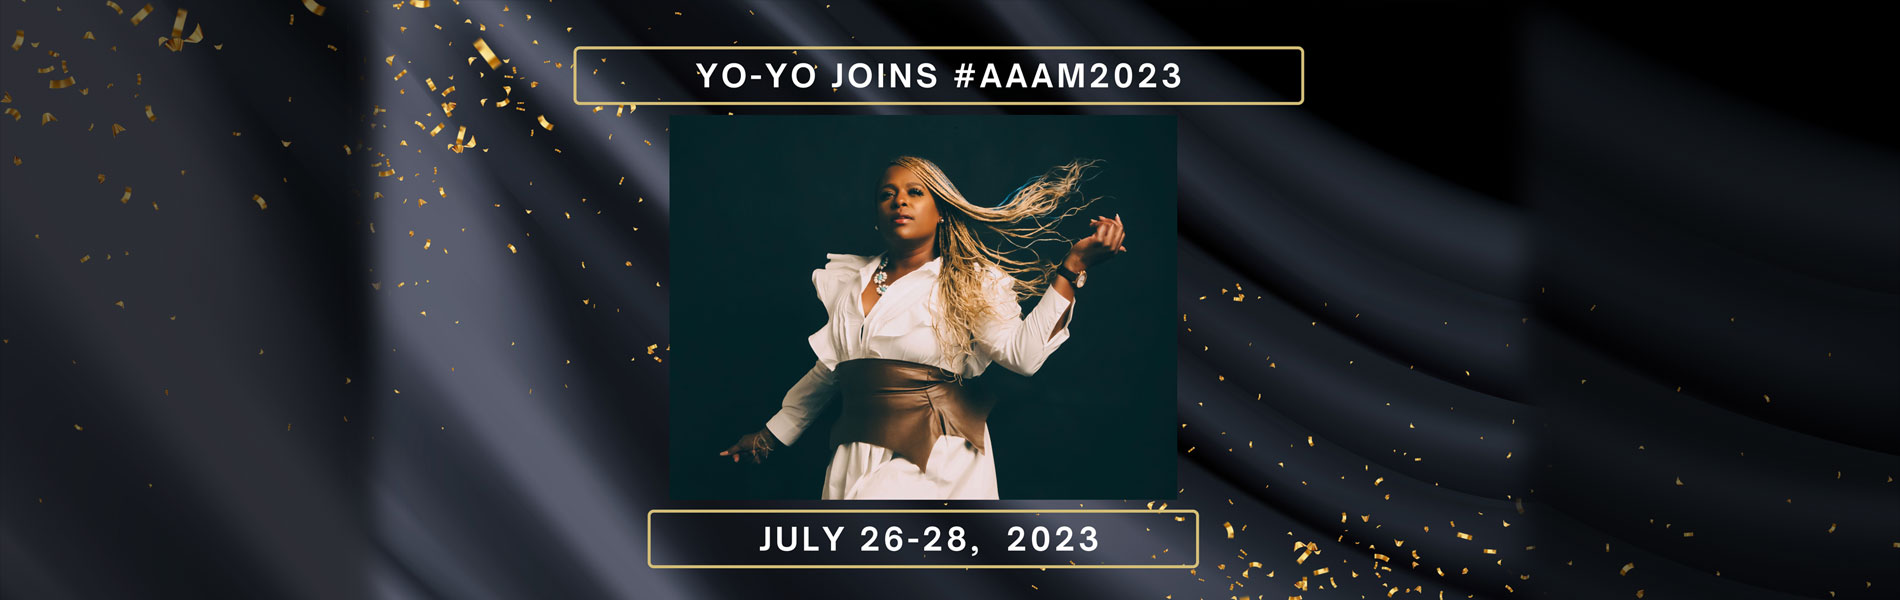 Yo-Yo joins AAAM 2023